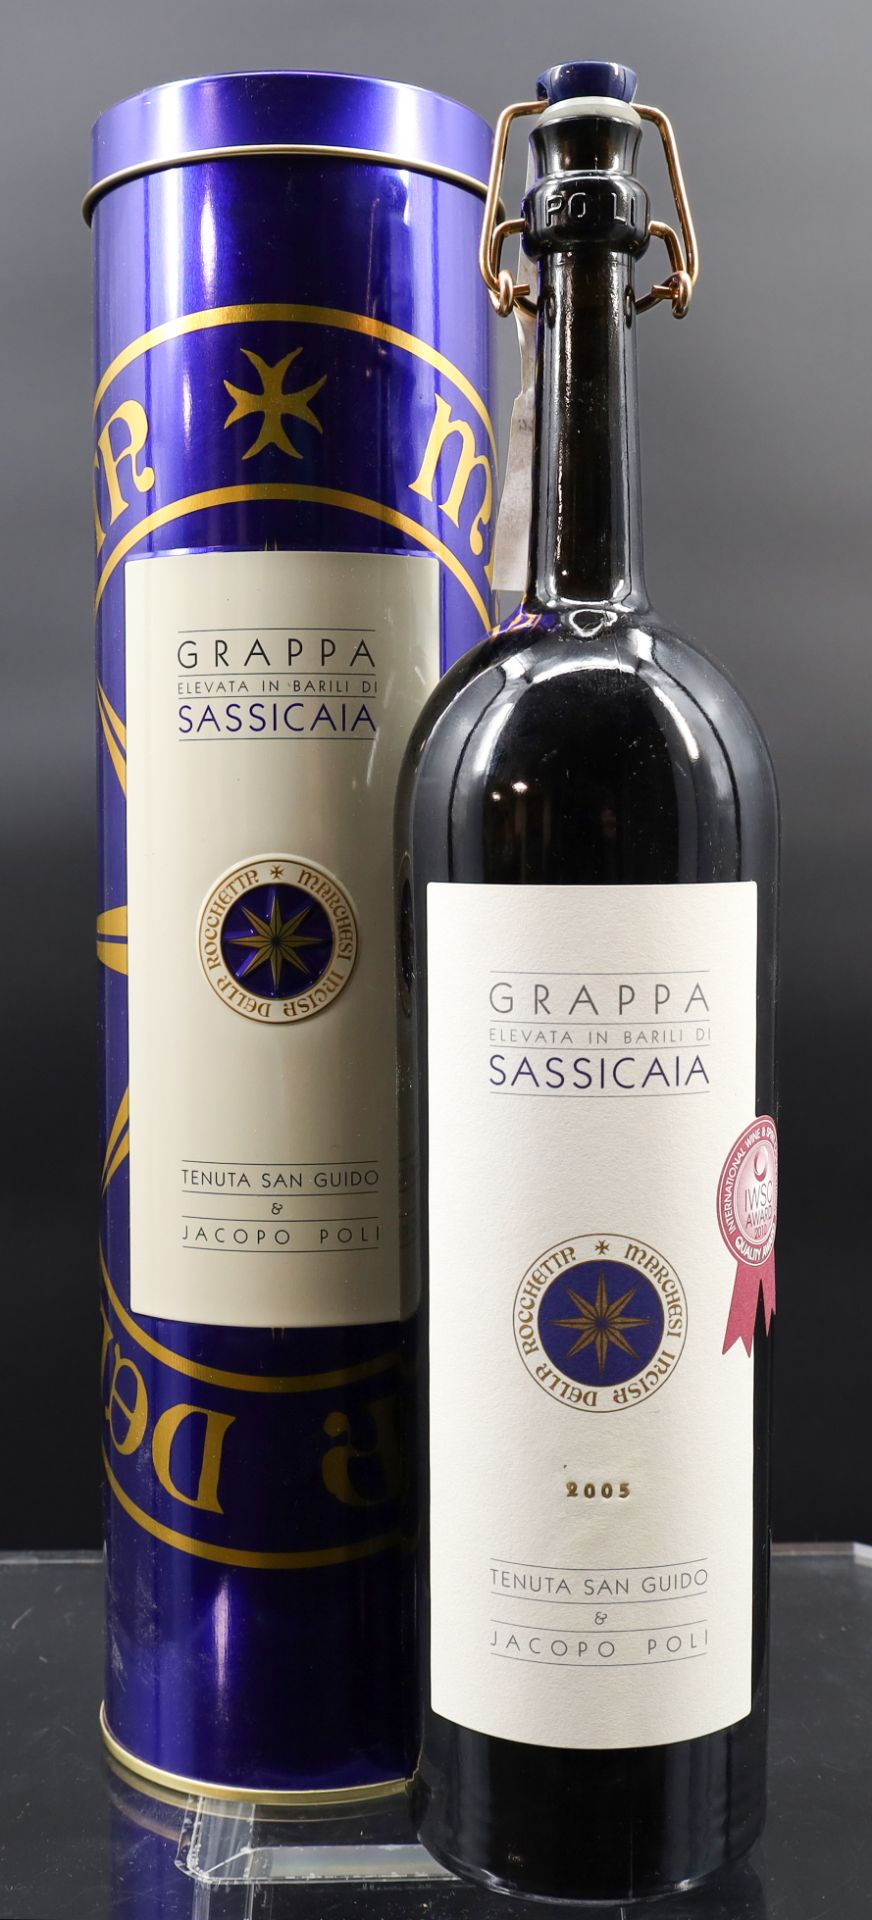 1 Flasche Grappa. "Elevata in Barili di Sassicaia". Nord-Italien. 2005.